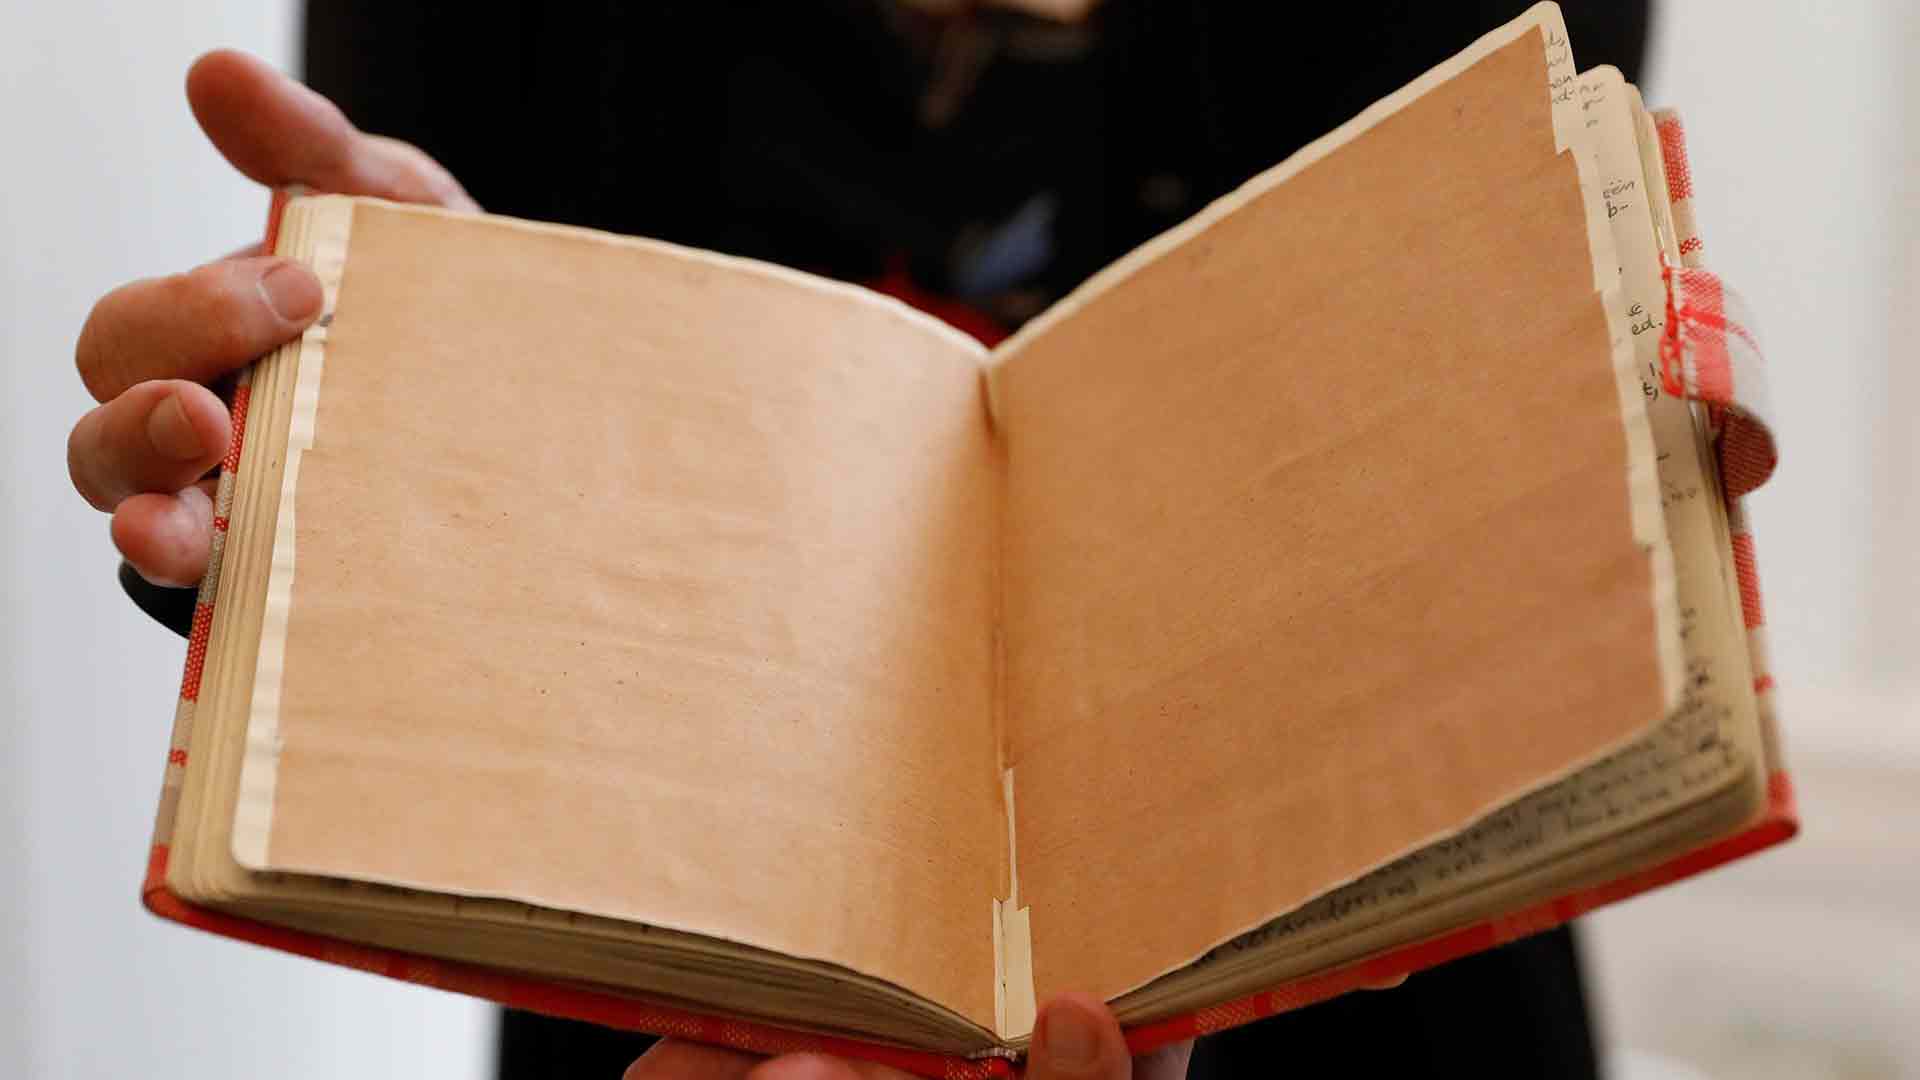 Reveladas dos páginas del diario de Ana Frank que muestran su curiosidad por el sexo